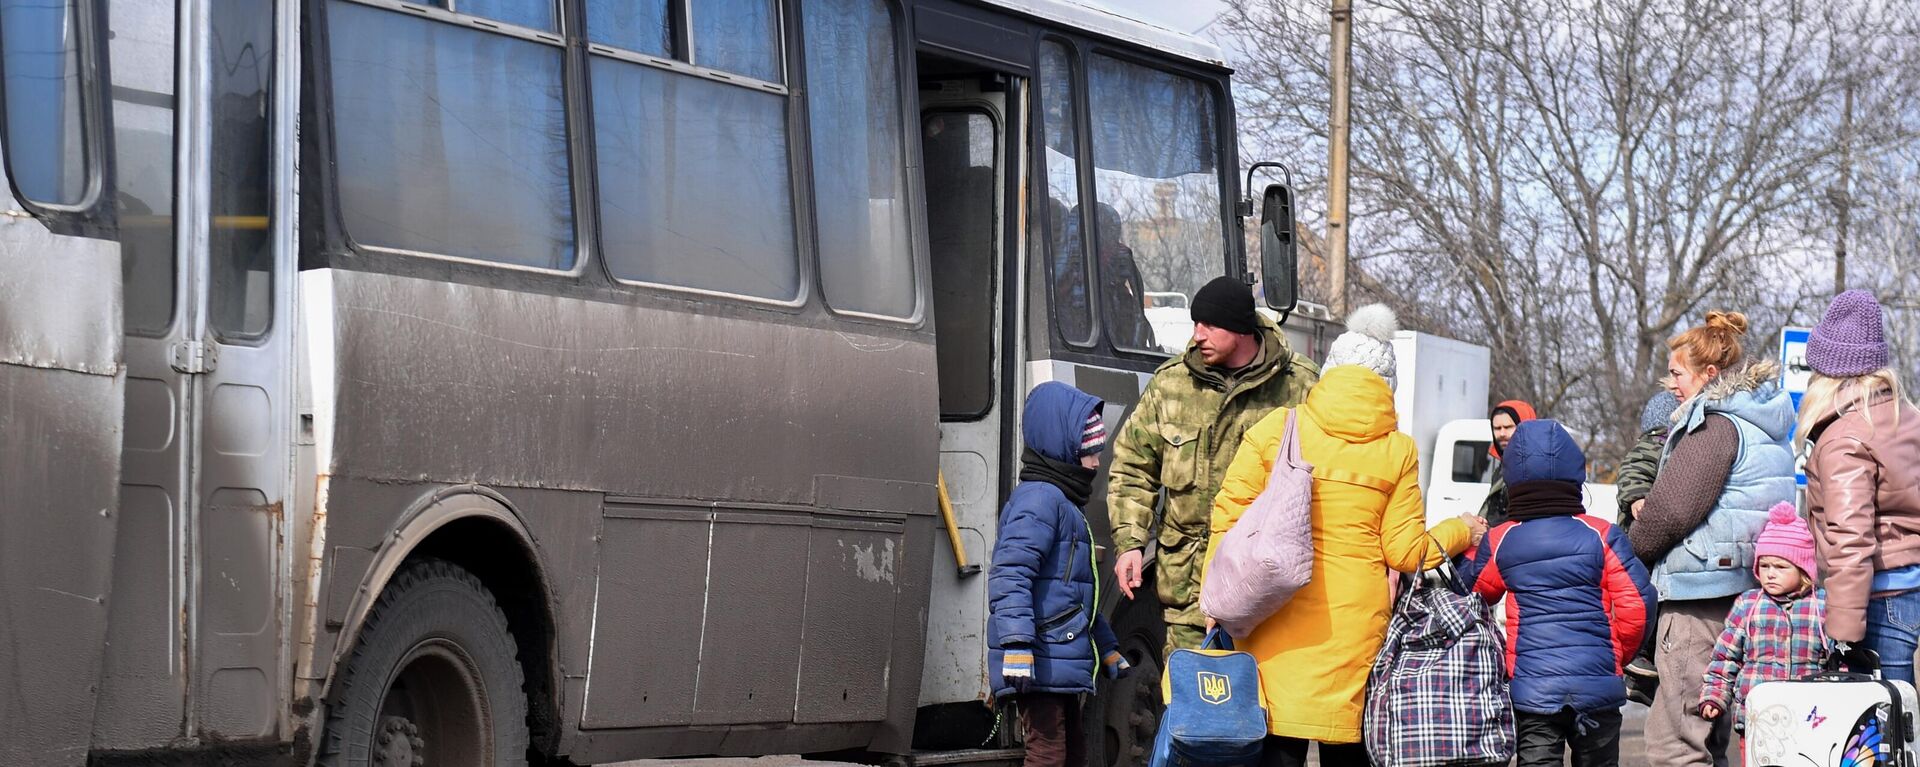 Evacuación de los habitantes de Mariúpol, organizada por el Servicio de Emergencias de la República Popular de Donetsk - Sputnik Mundo, 1920, 21.03.2022